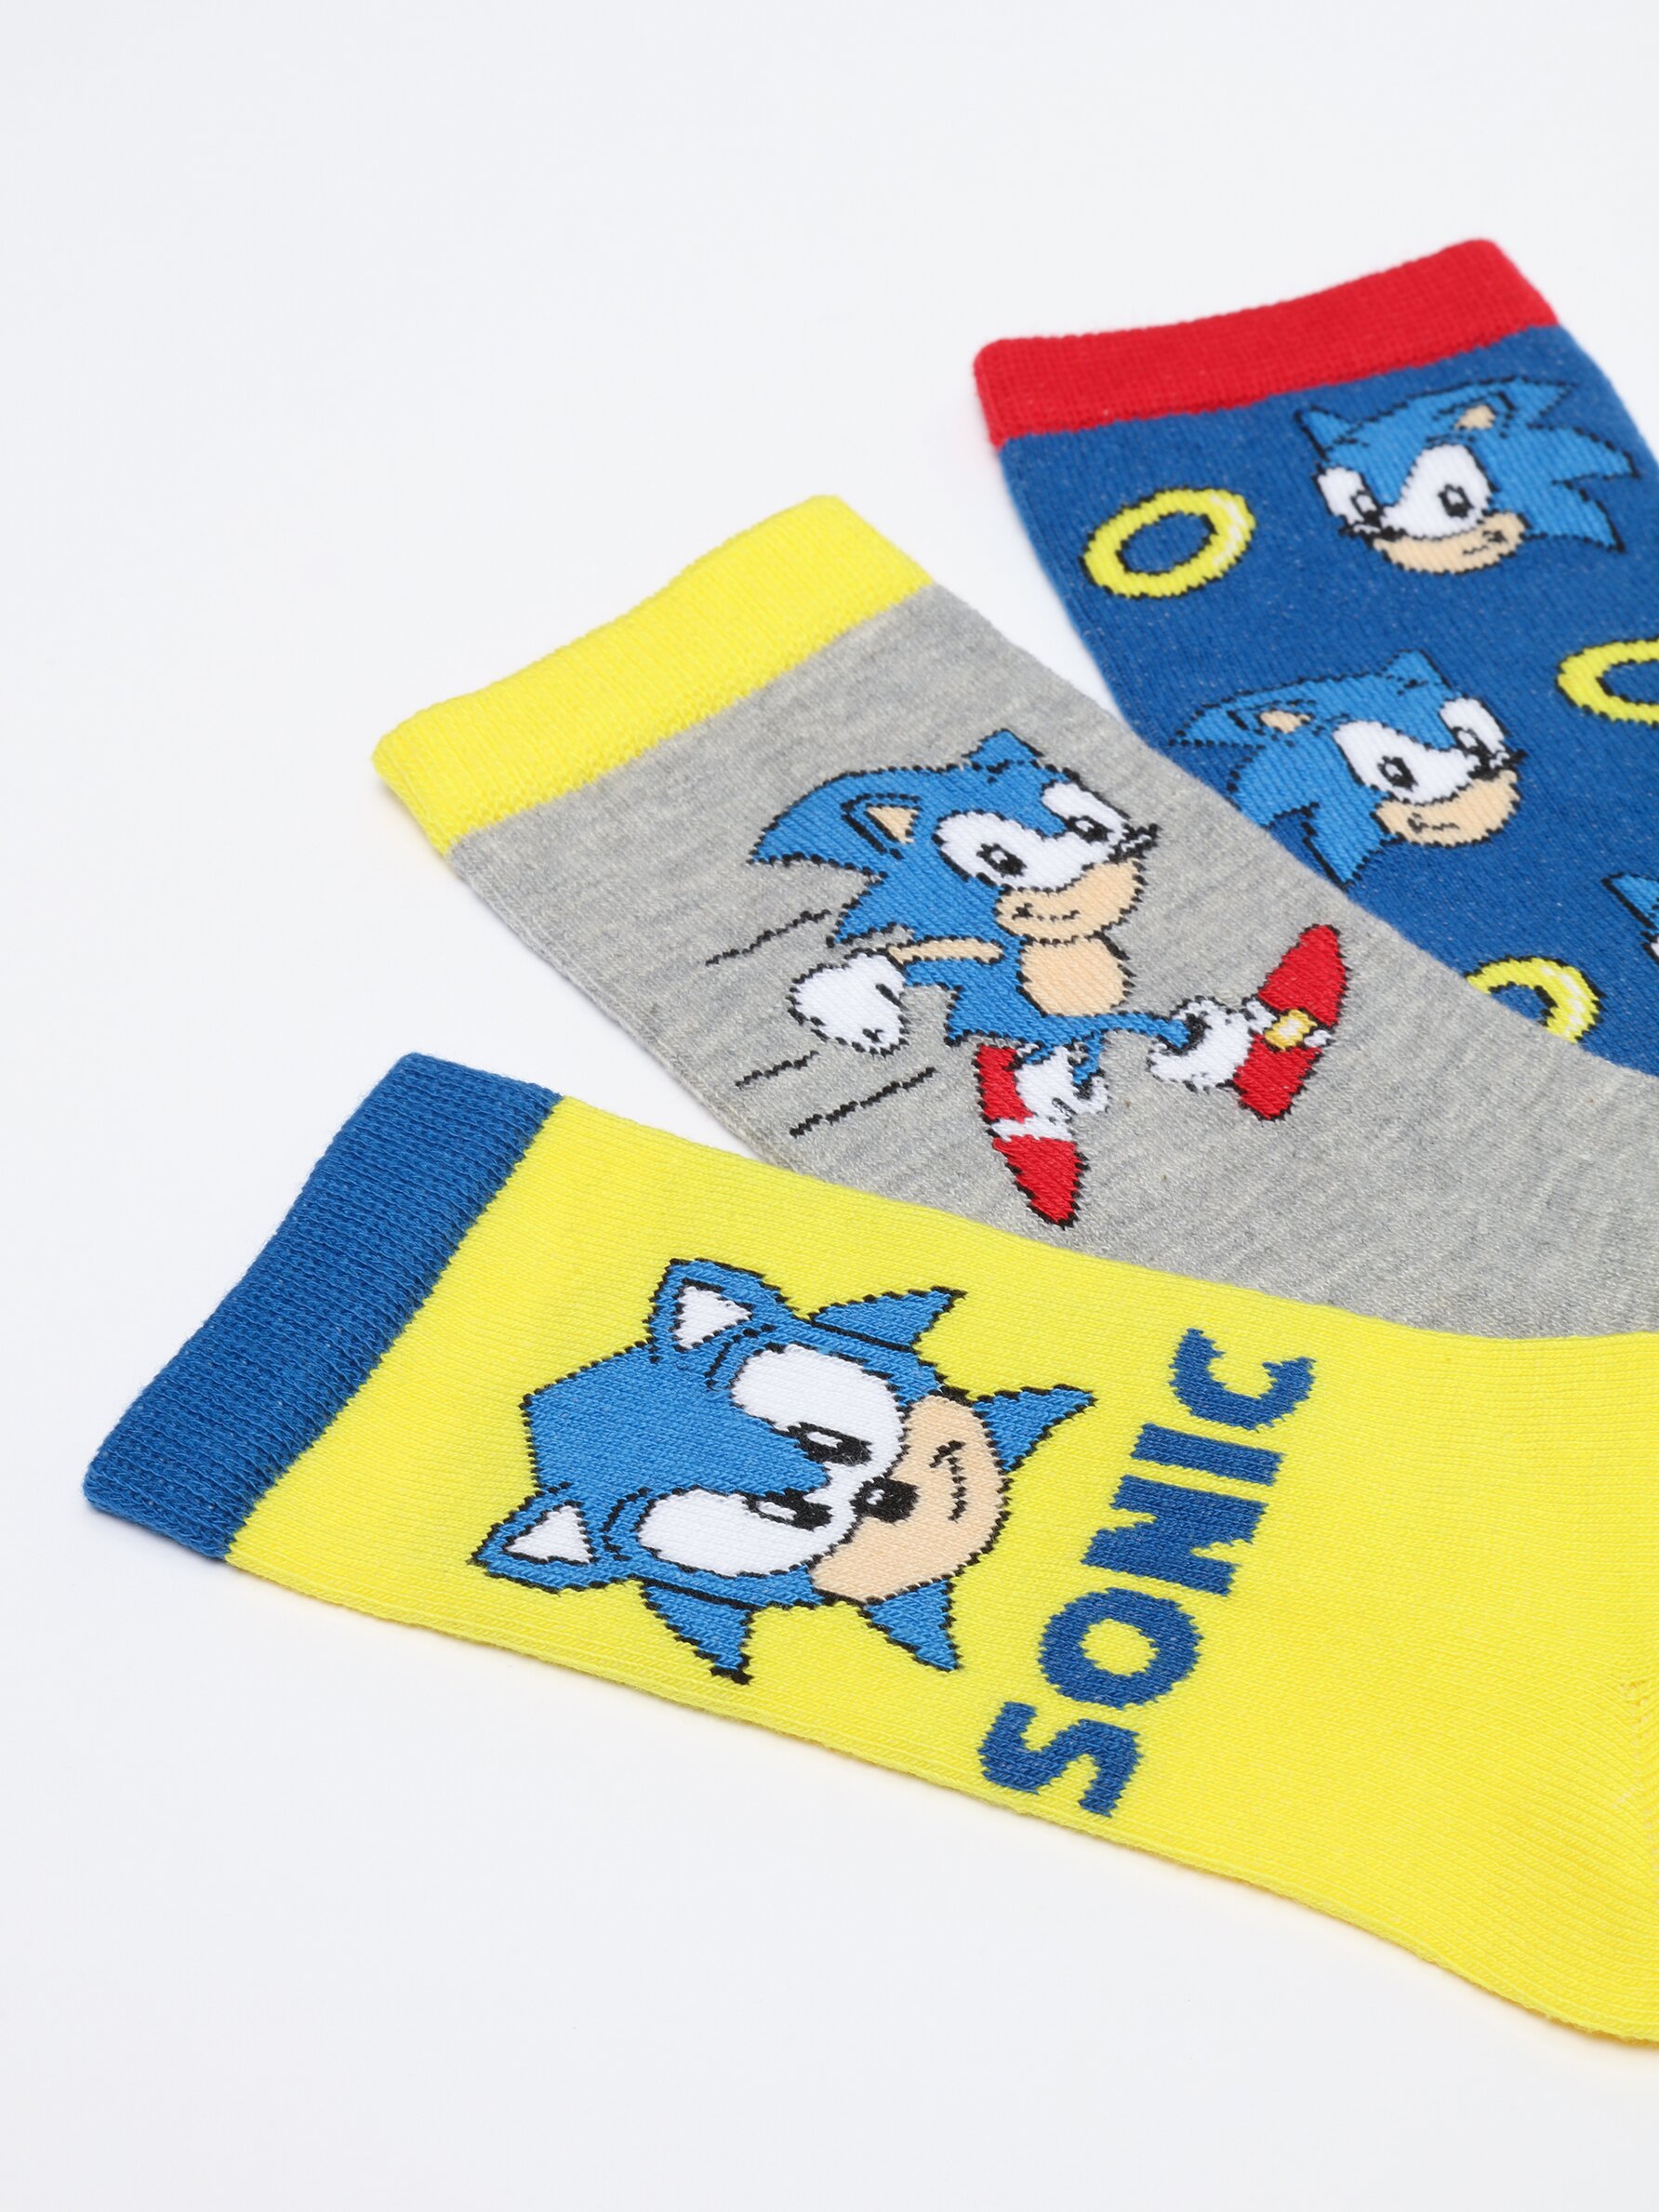 Sonic Pack Calcetines Niños